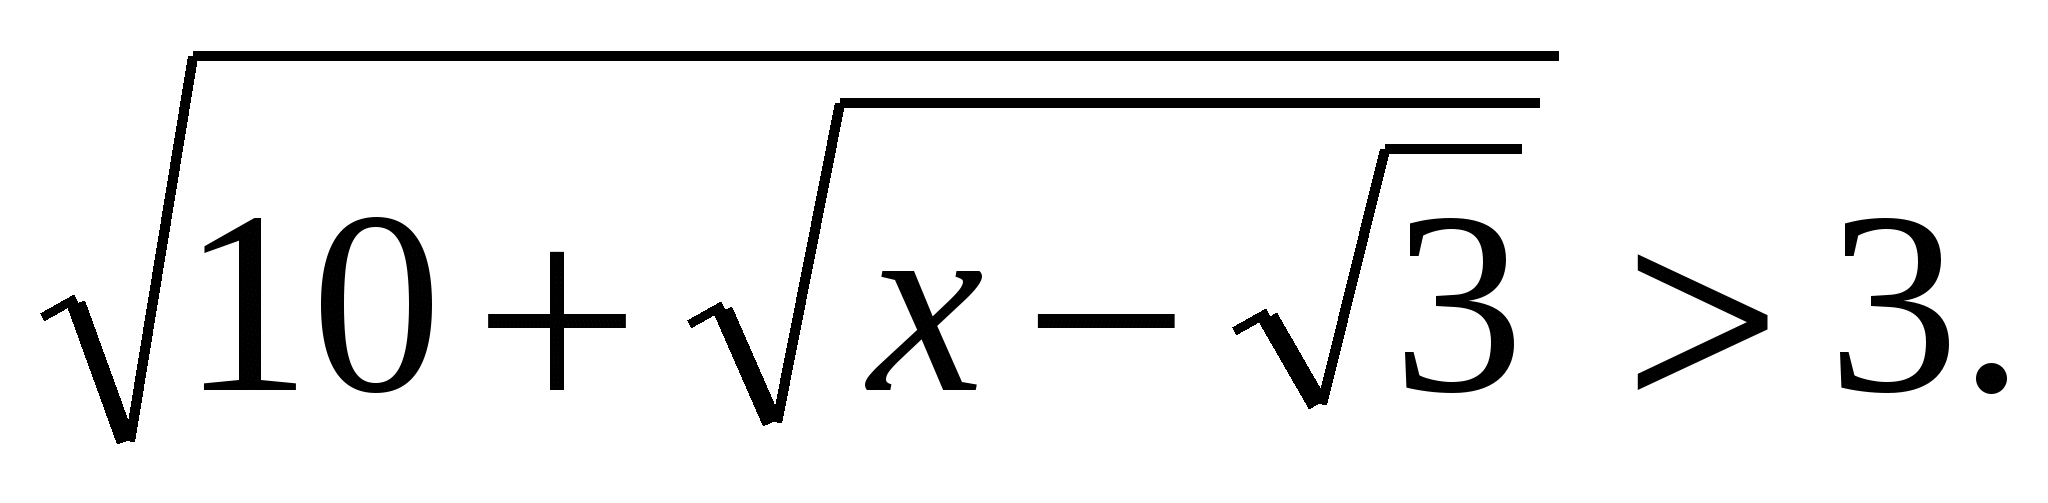 Элективный курс по математике Решение иррациональных уравнений